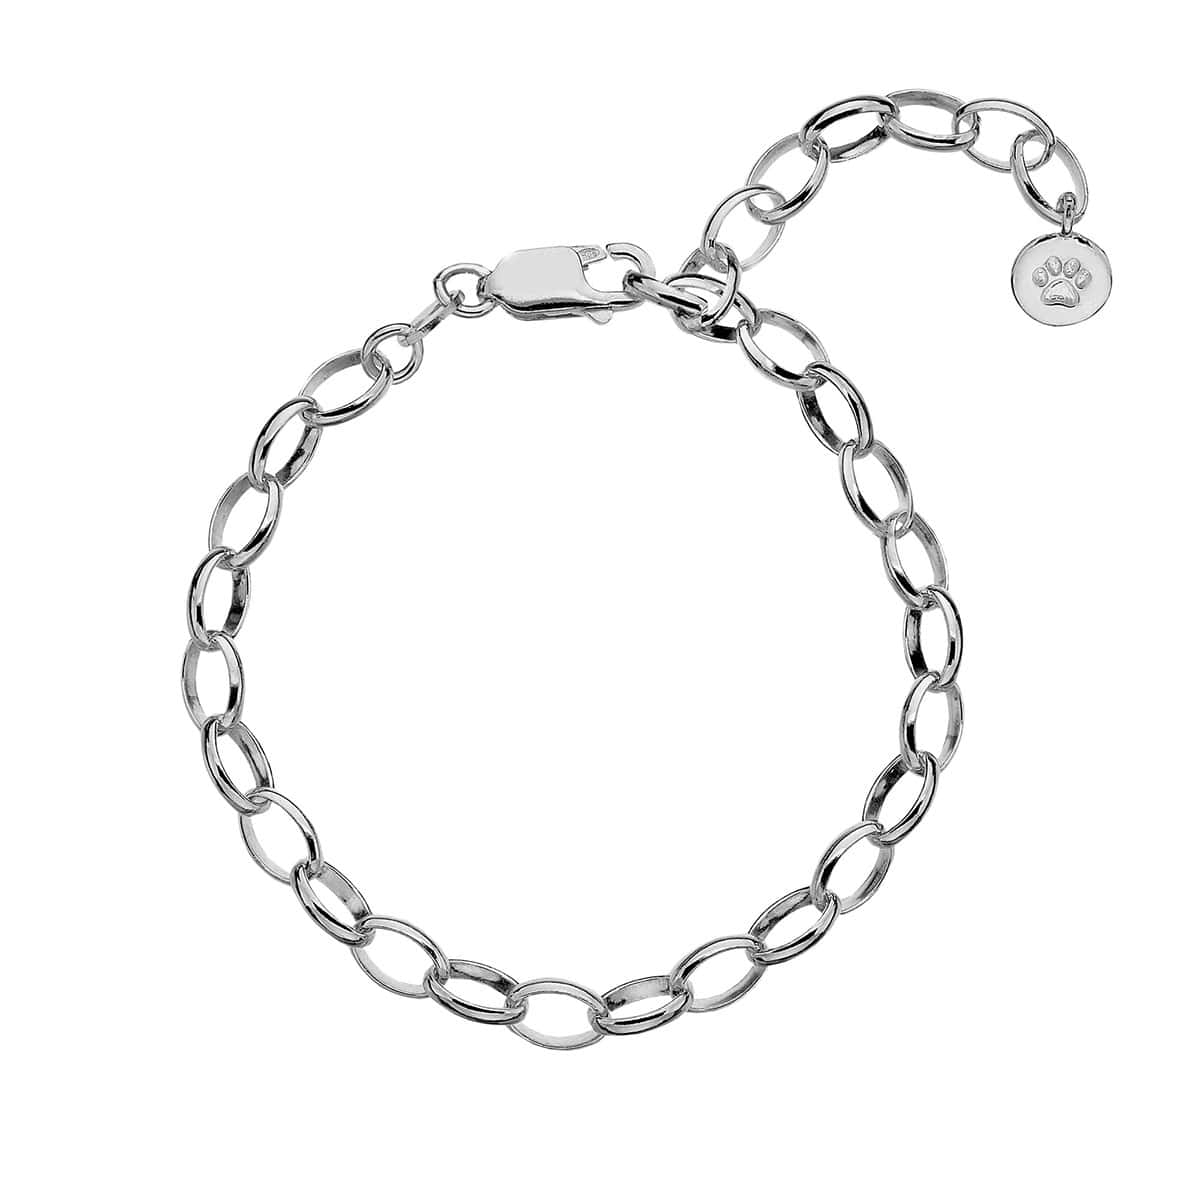 Girl’s Charm Bracelet